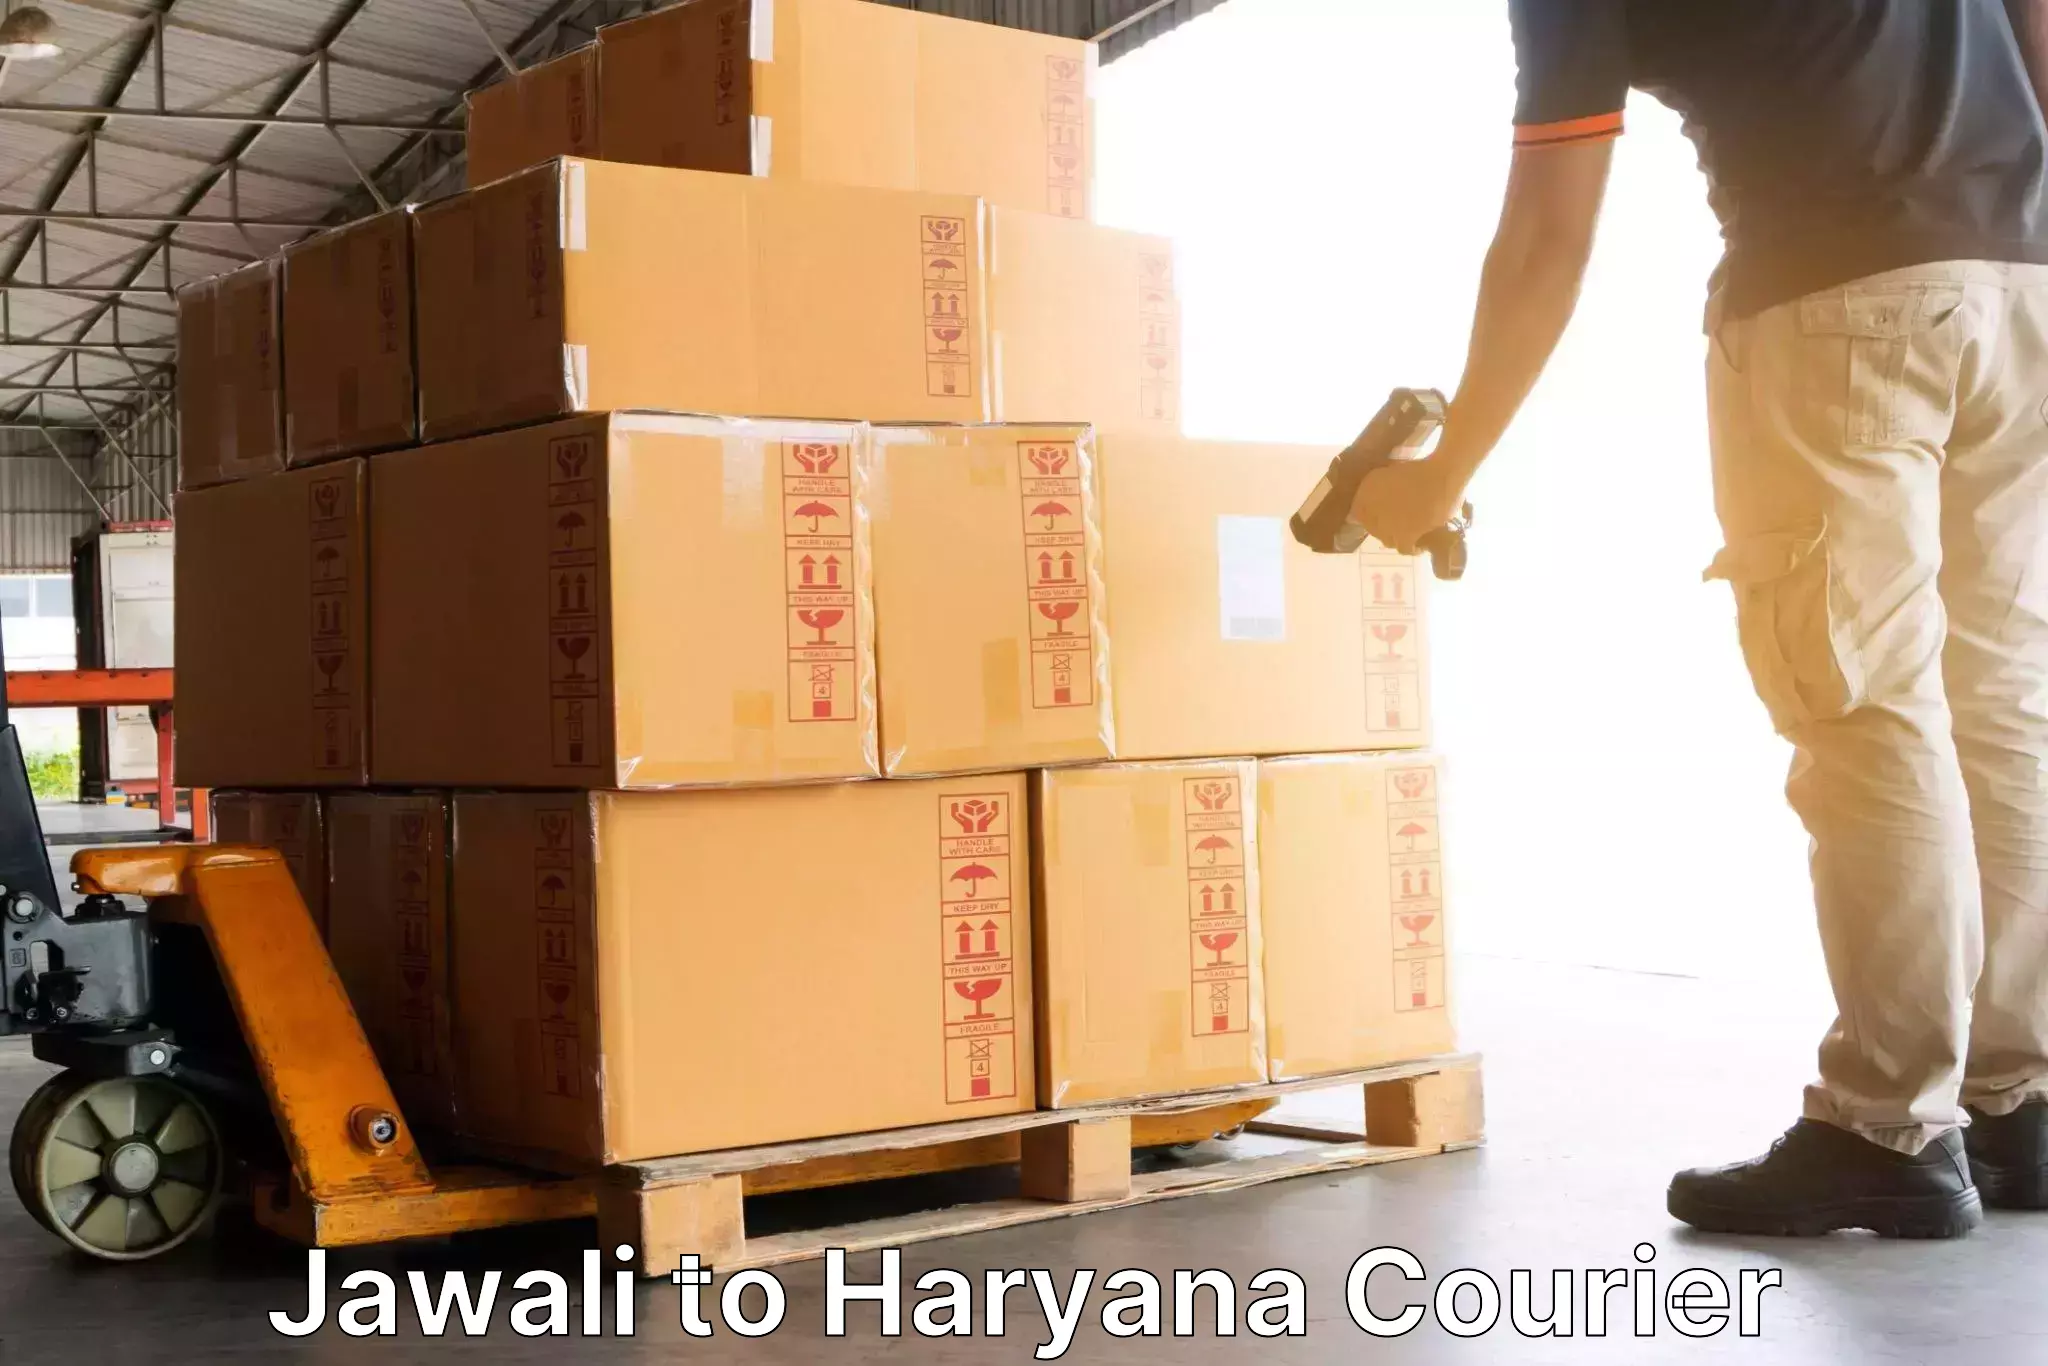 Affordable shipping solutions Jawali to Chaudhary Charan Singh Haryana Agricultural University Hisar